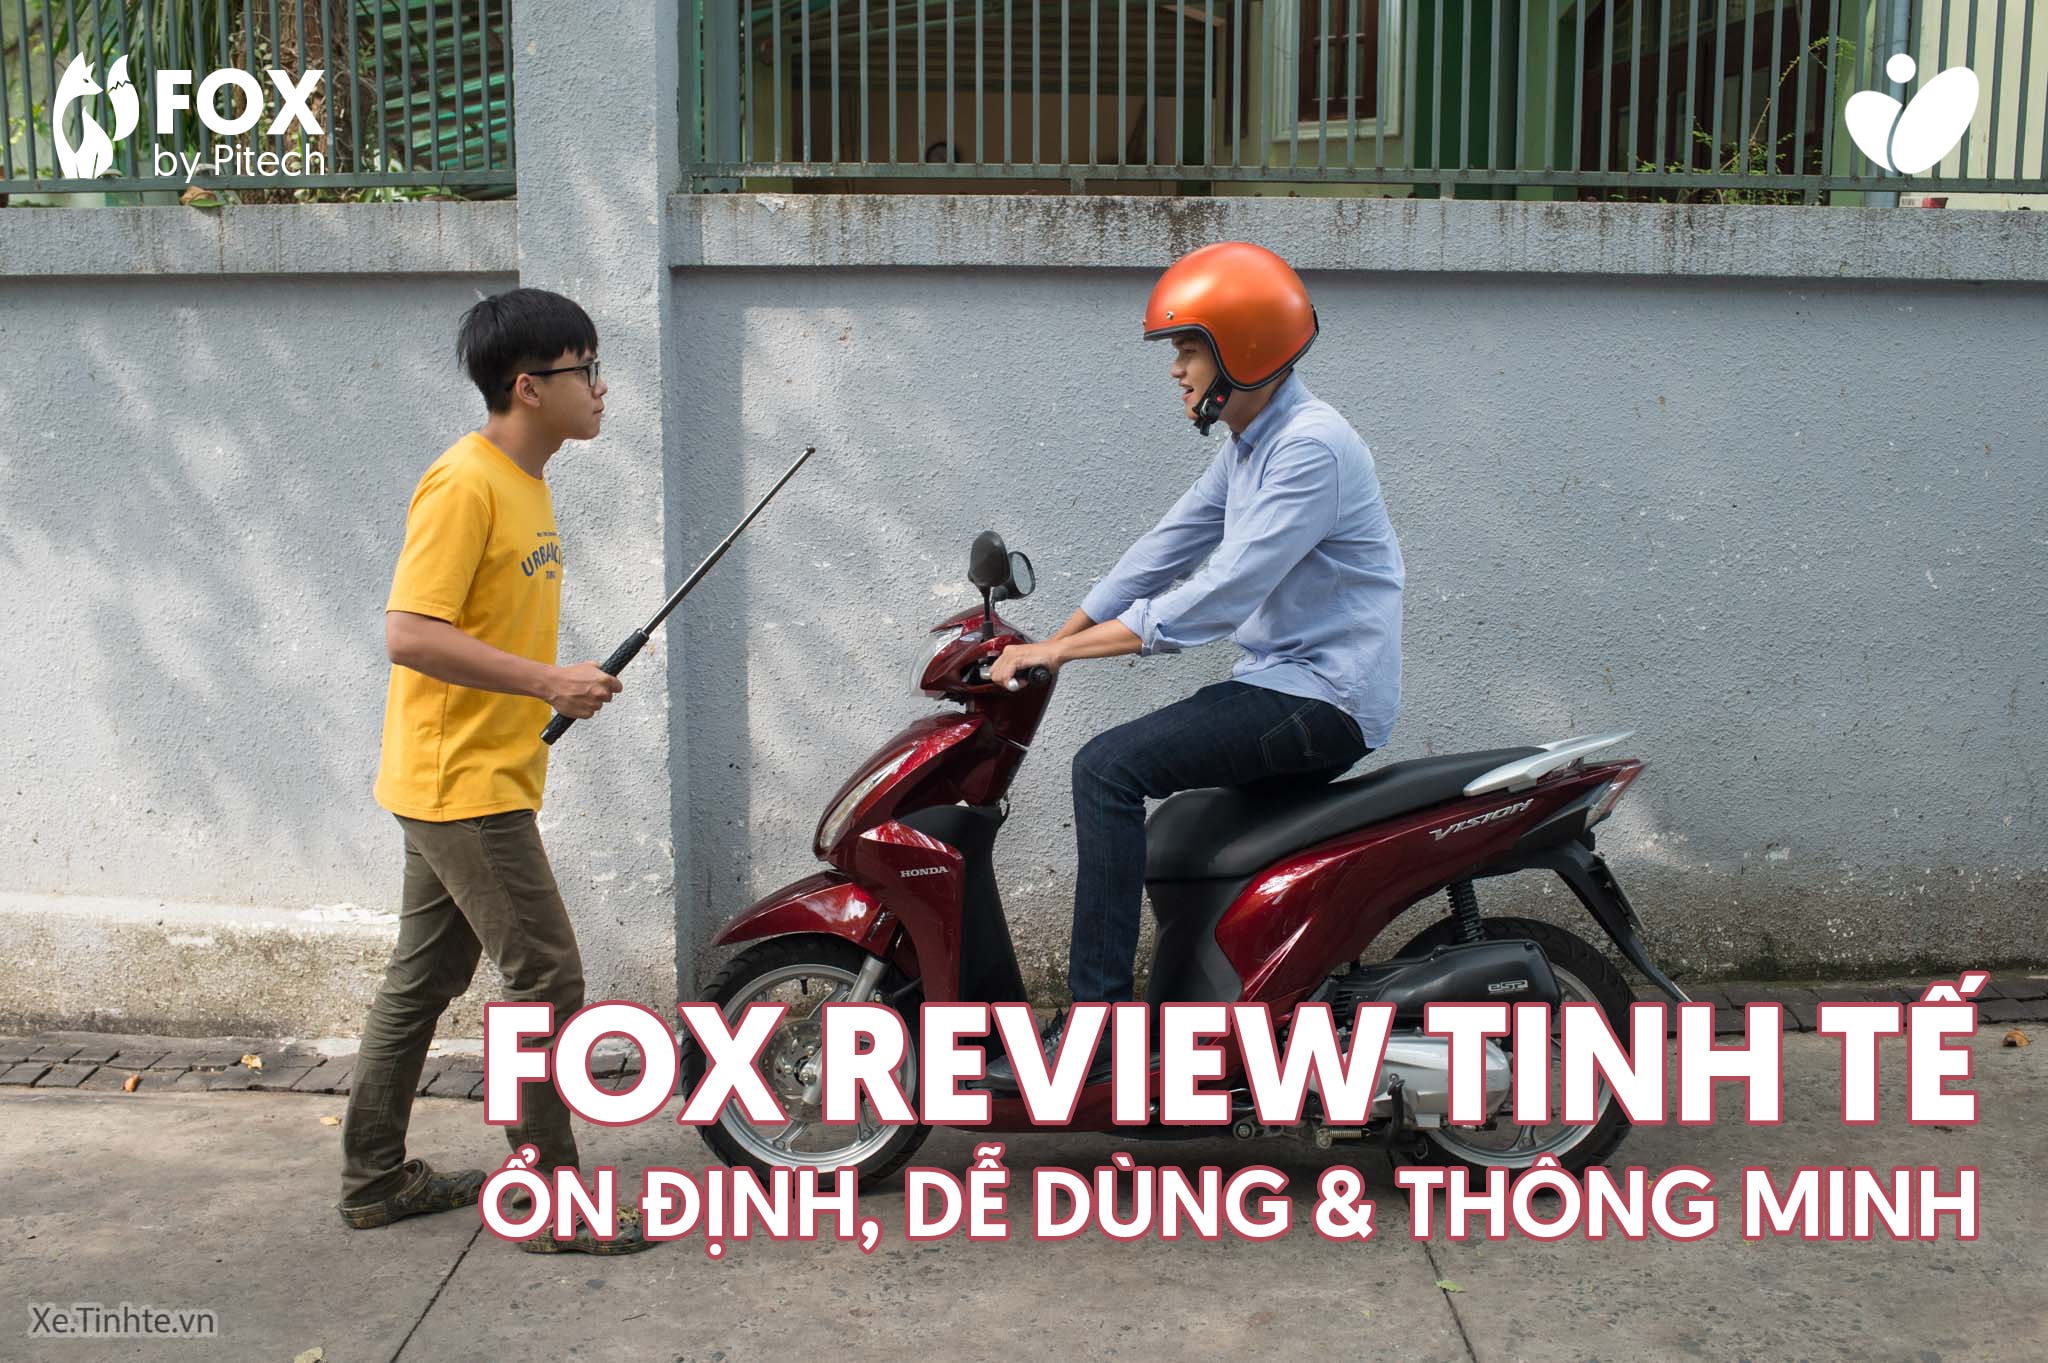 Review Khóa Chống Trộm Fox By Pitech